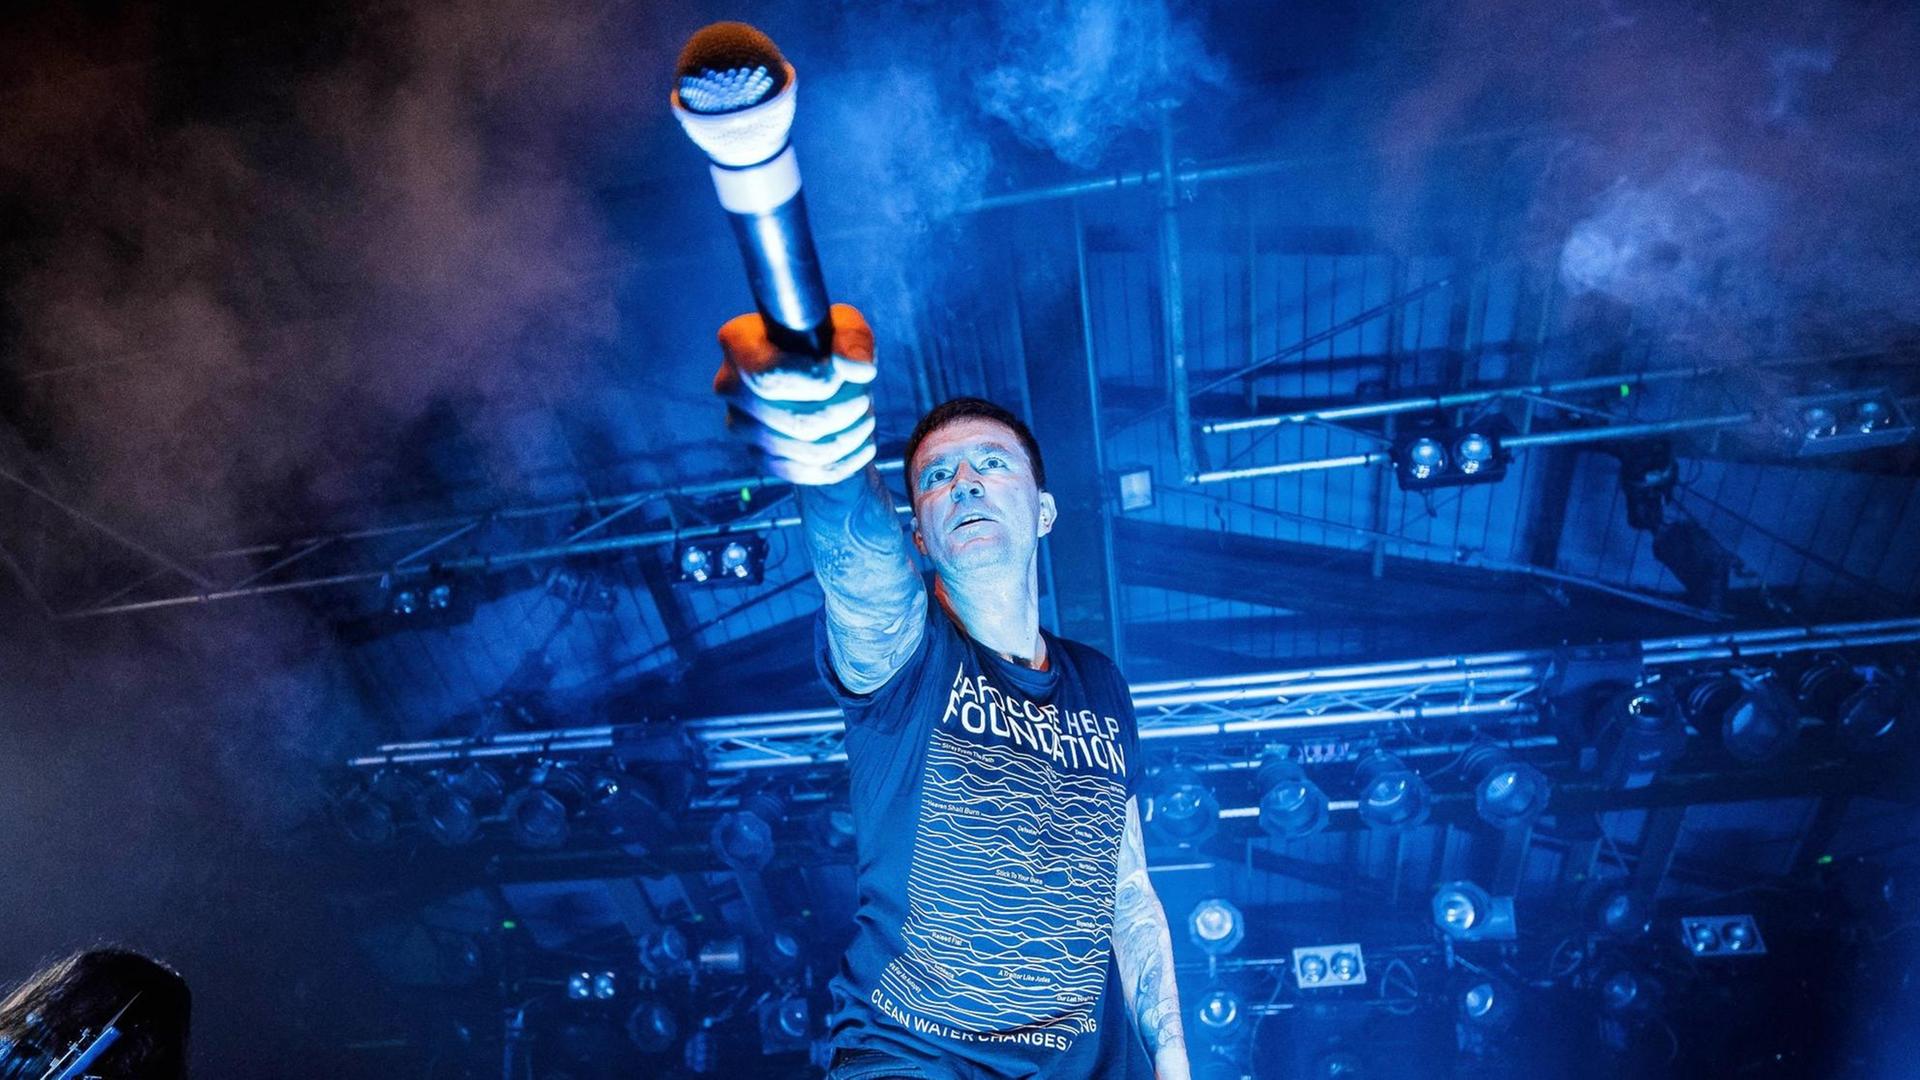 Marcus Bischoff, Sänger der Band "Heaven Shall Burn" auf der Bühne, mit einem Mikrofon in der Hand, das er in Richtung des Publikums hält.